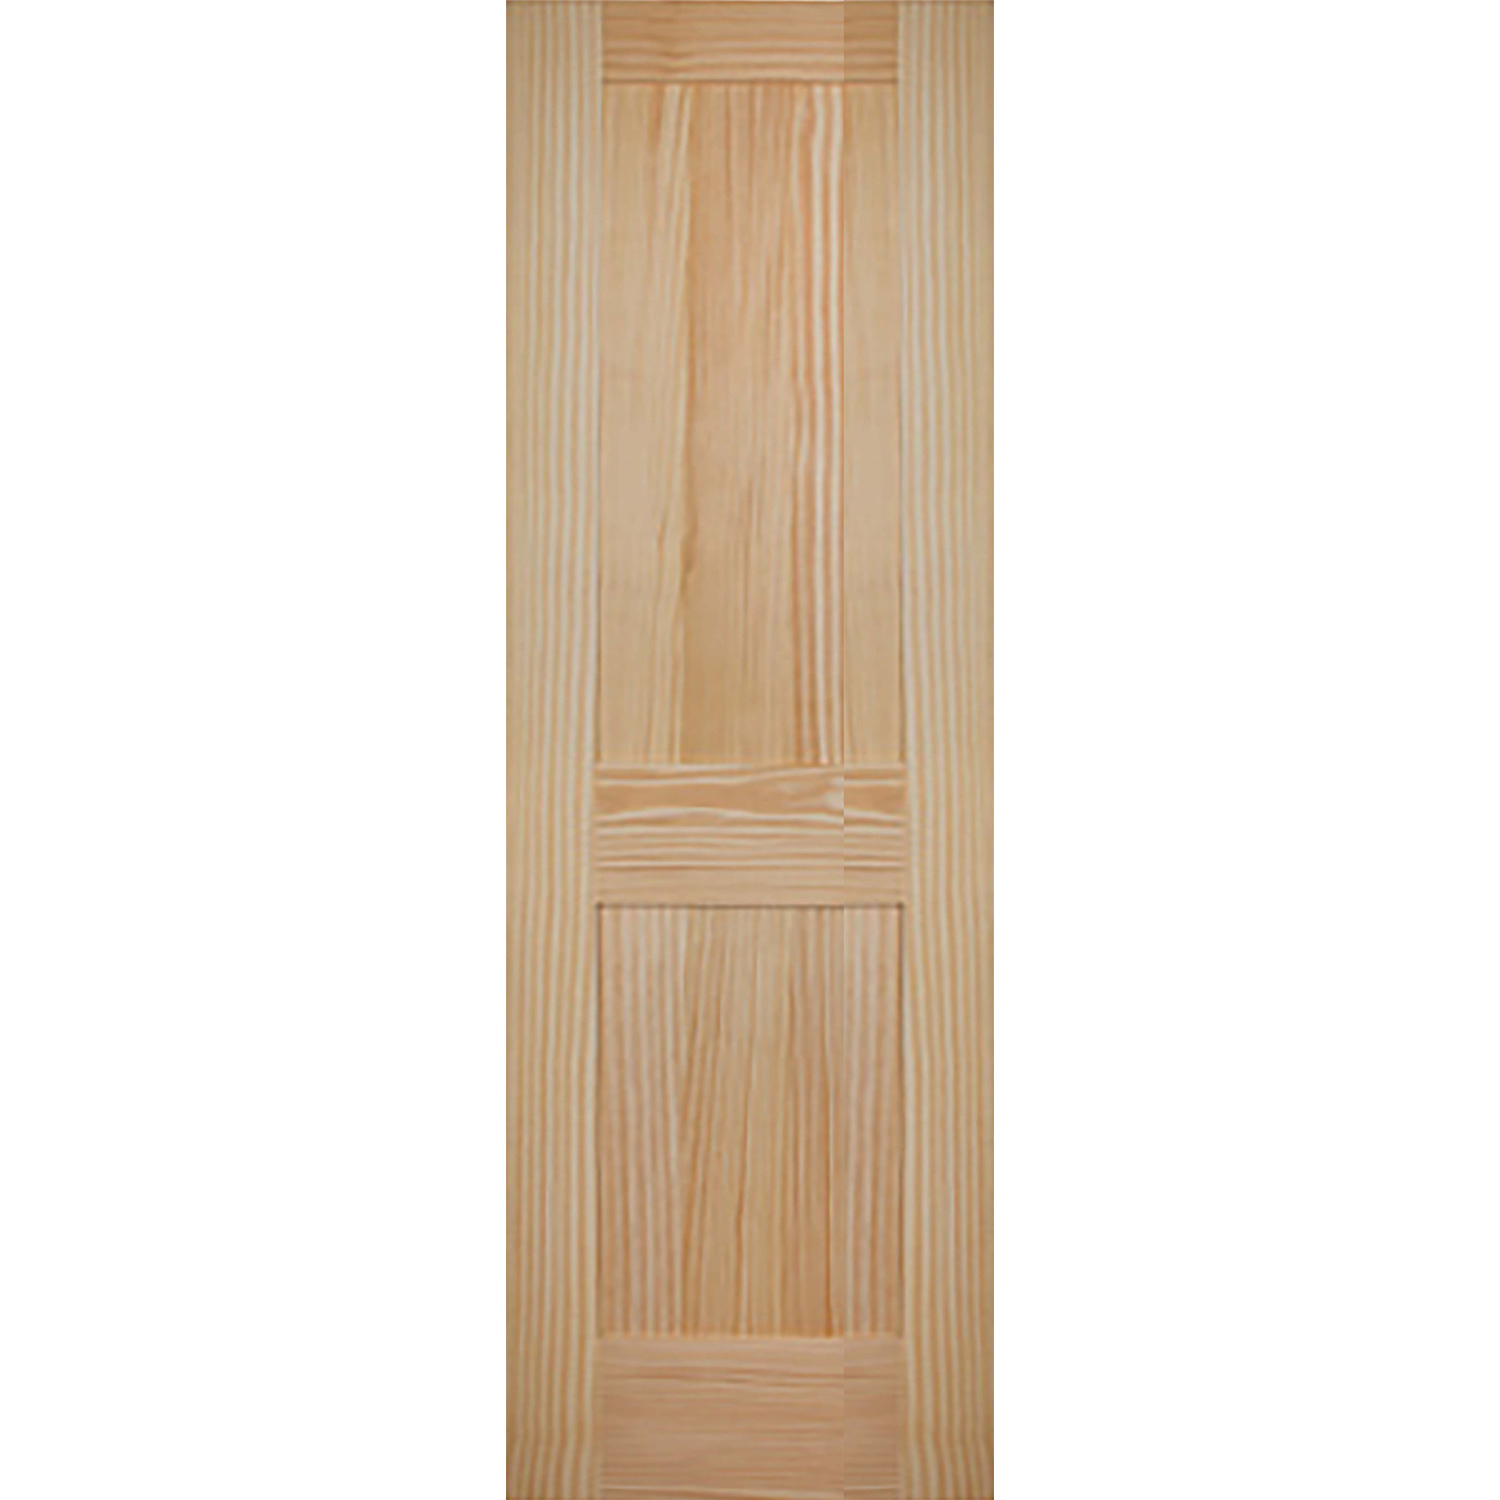 2 Panel 26 x 80 x 1 3/8 - Knotty Pine Door Shaker